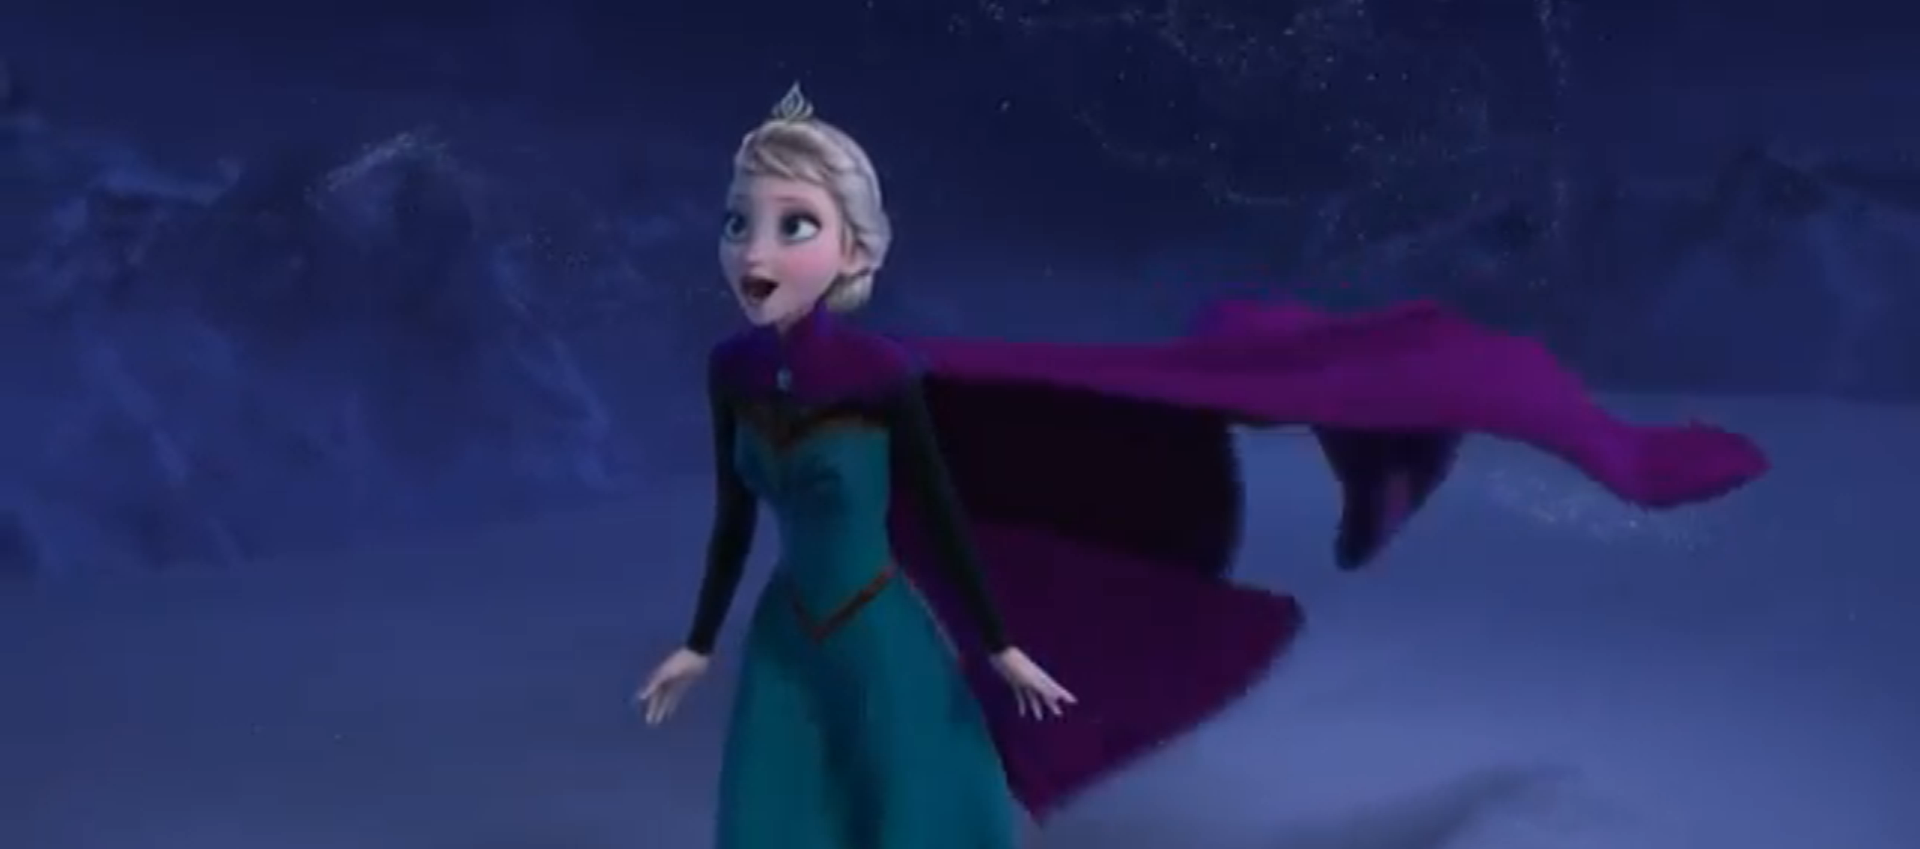 アナと雪の女王 Frozen 14 Let It Go レット イット ゴー ありのままで 歌詞 アニメスクリプトで英語学習 Anime Script English